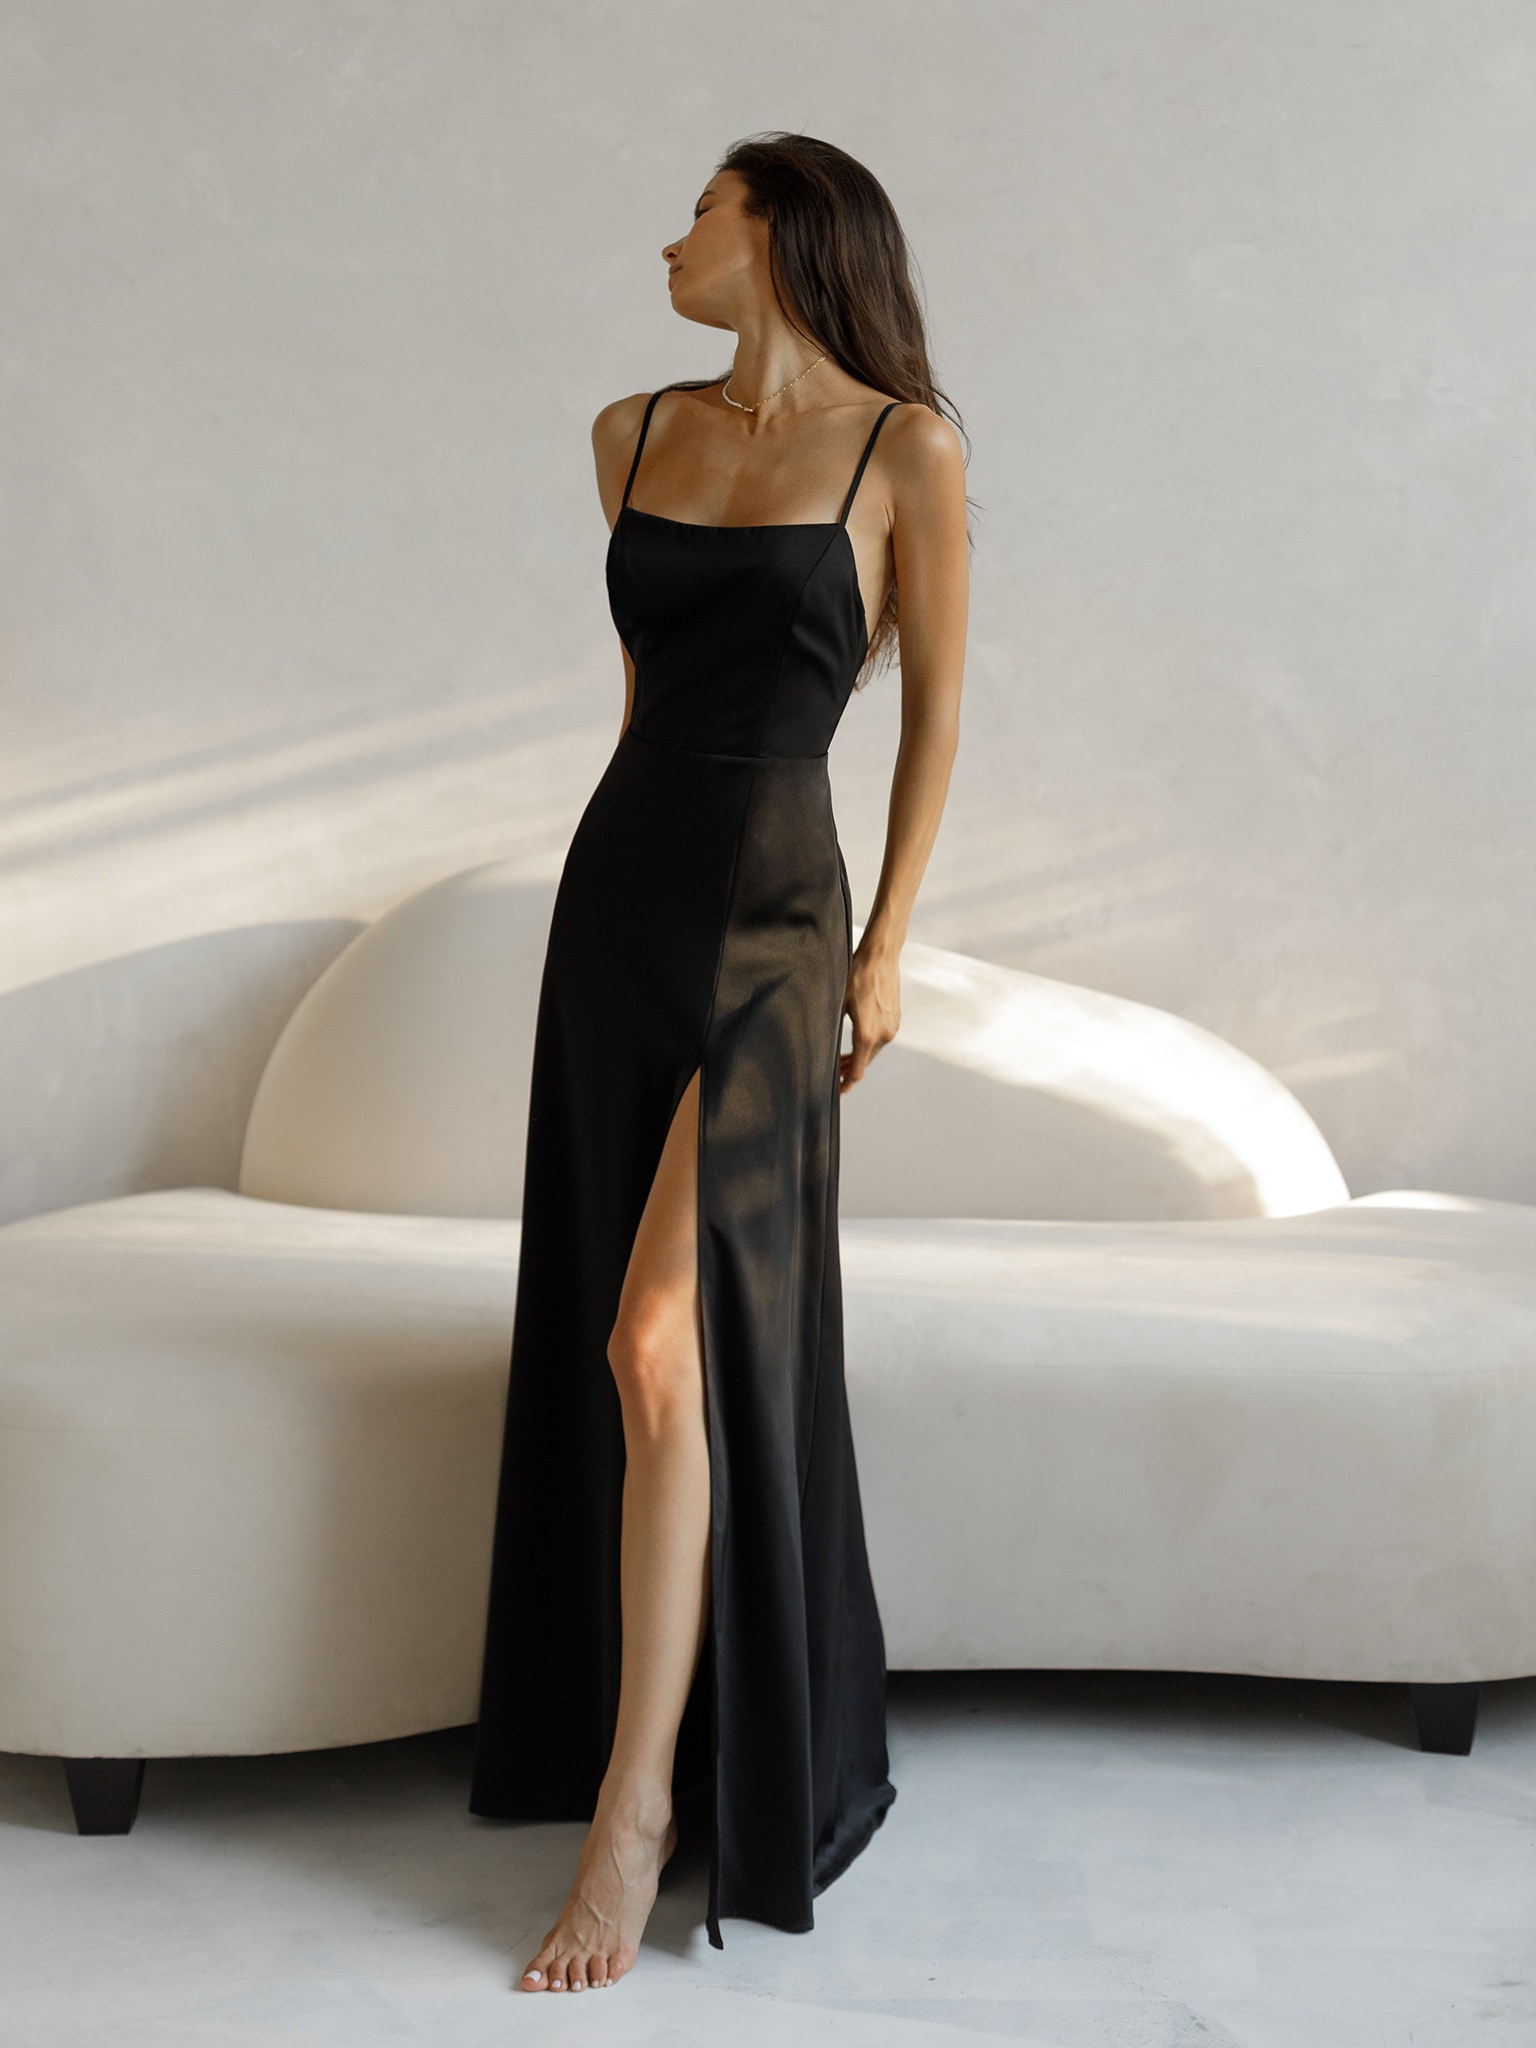 Madame Black Dress | Buy COLOR Black Dress Online for | Glamly